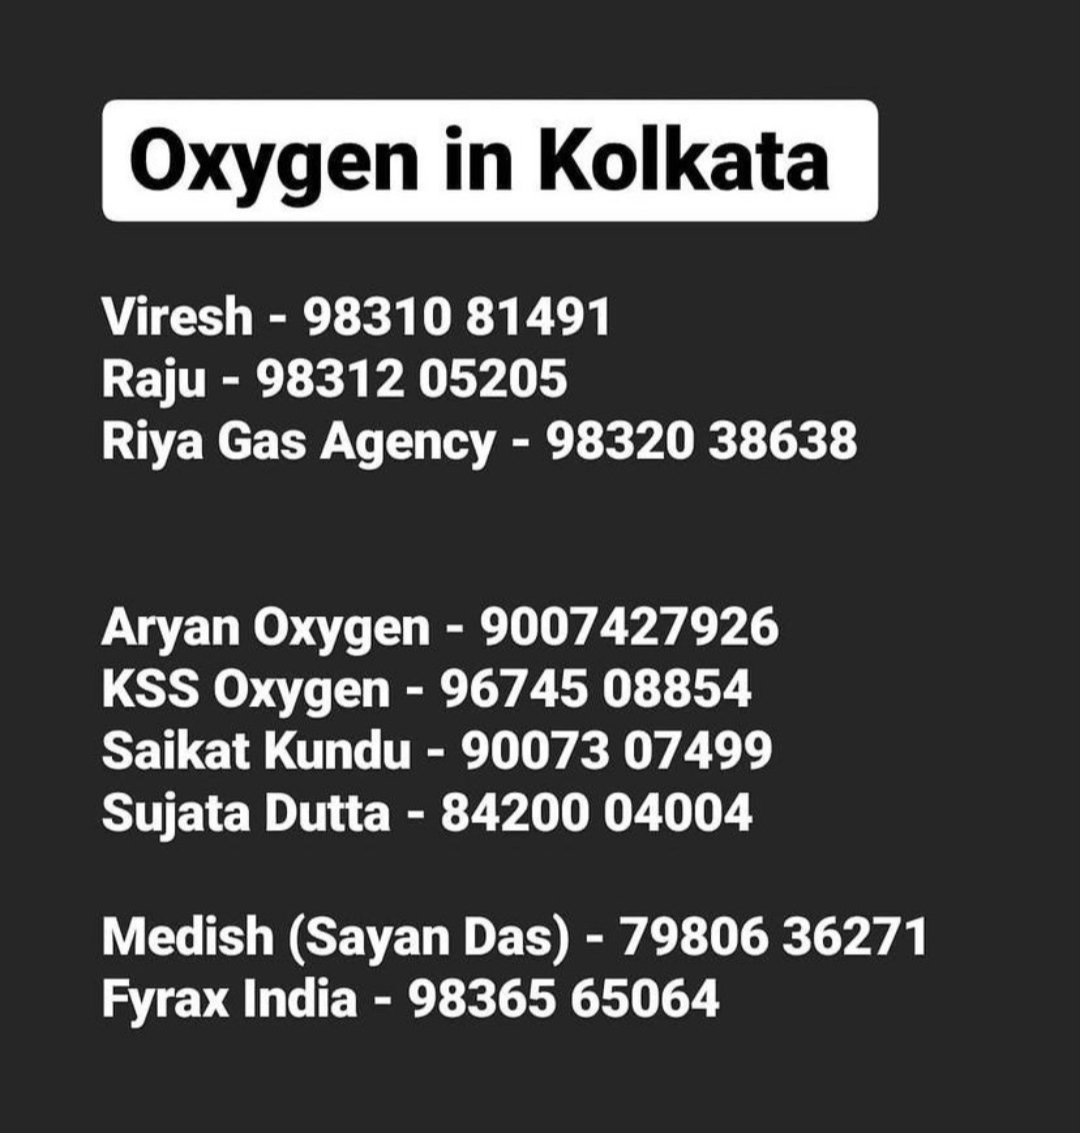 for oxygen supply  #KolkataCovidCare